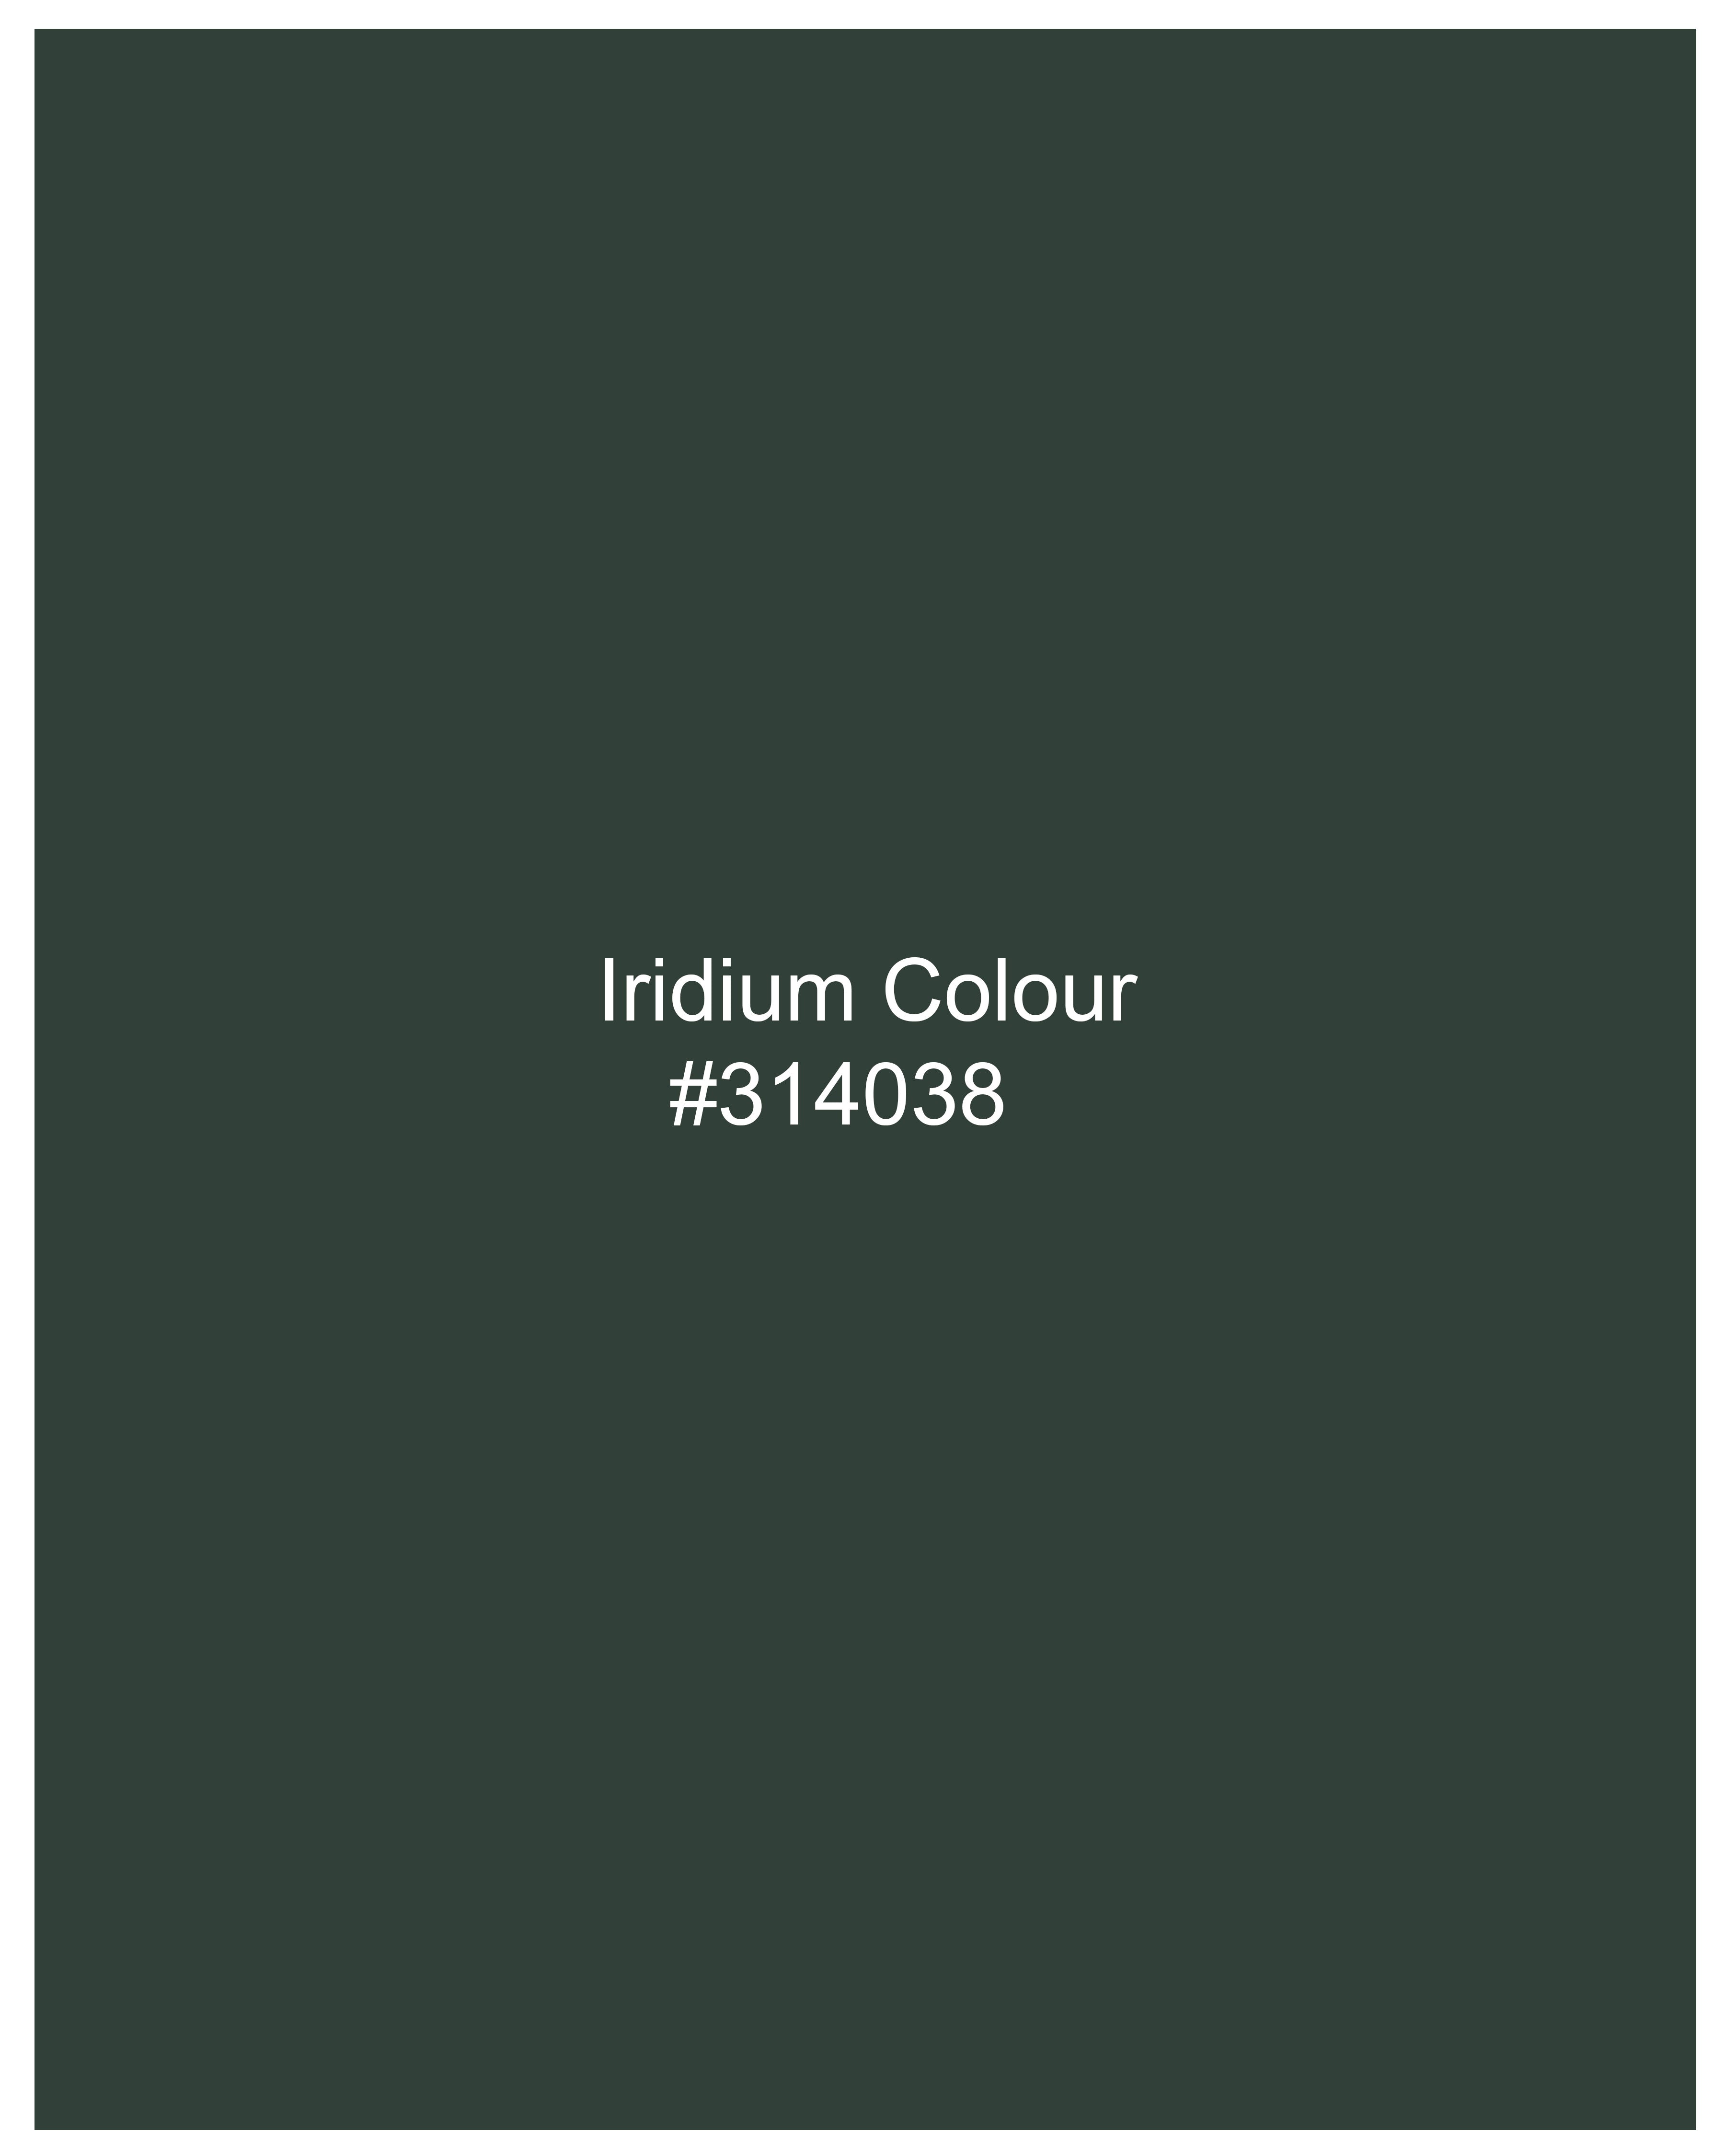 Iridium Green Plaid Dobby Textured Premium Giza Cotton Shirt 9343-CA-38, 9343-CA-H-38, 9343-CA-39, 9343-CA-H-39, 9343-CA-40, 9343-CA-H-40, 9343-CA-42, 9343-CA-H-42, 9343-CA-44, 9343-CA-H-44, 9343-CA-46, 9343-CA-H-46, 9343-CA-48, 9343-CA-H-48, 9343-CA-50, 9343-CA-H-50, 9343-CA-52, 9343-CA-H-52